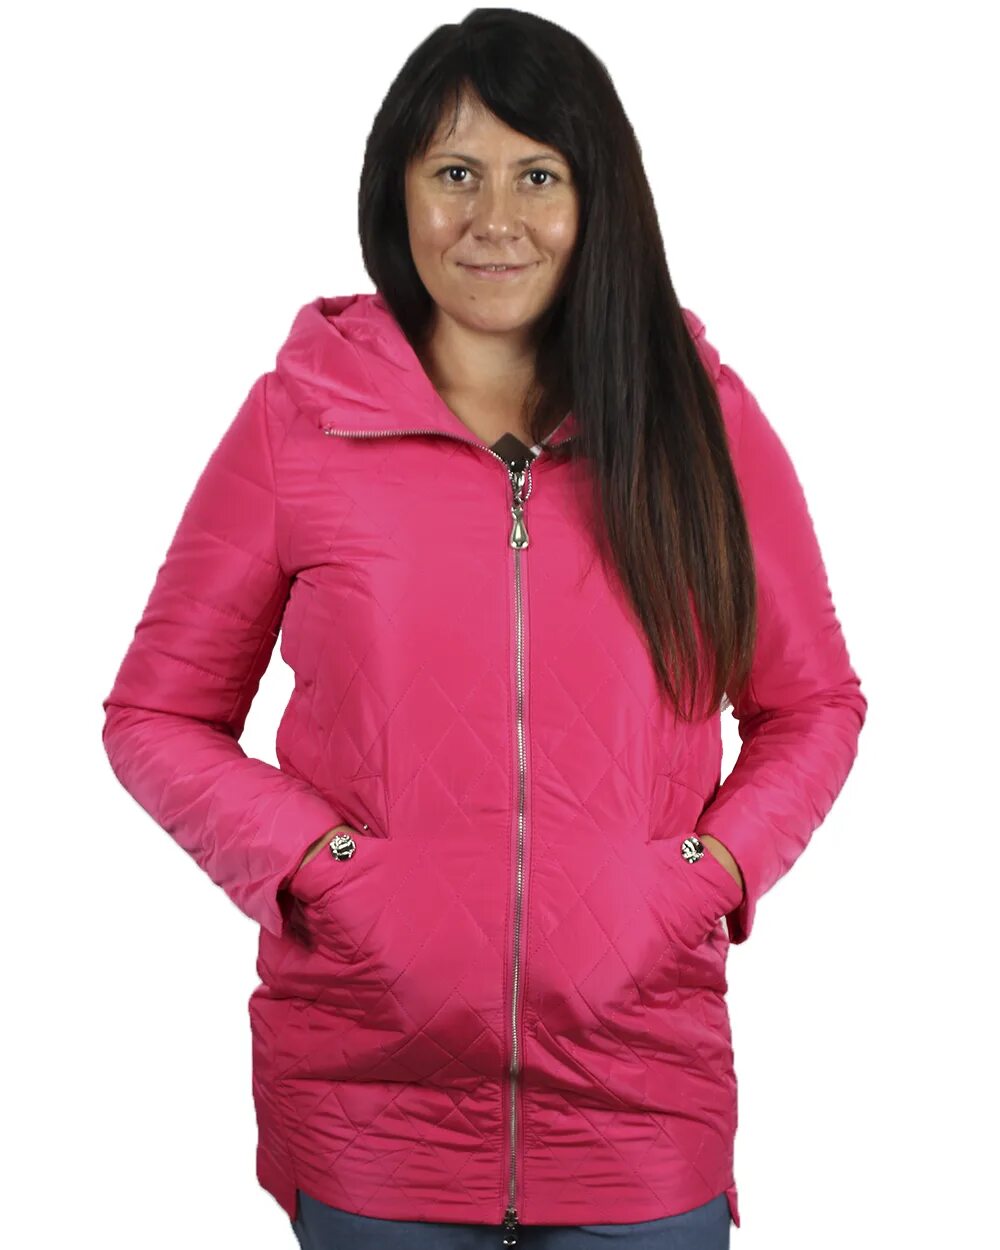 Куртка женская. Женская демисезонная куртка. Розовая куртка женская. Куртки женские демисезонные больших размеров.